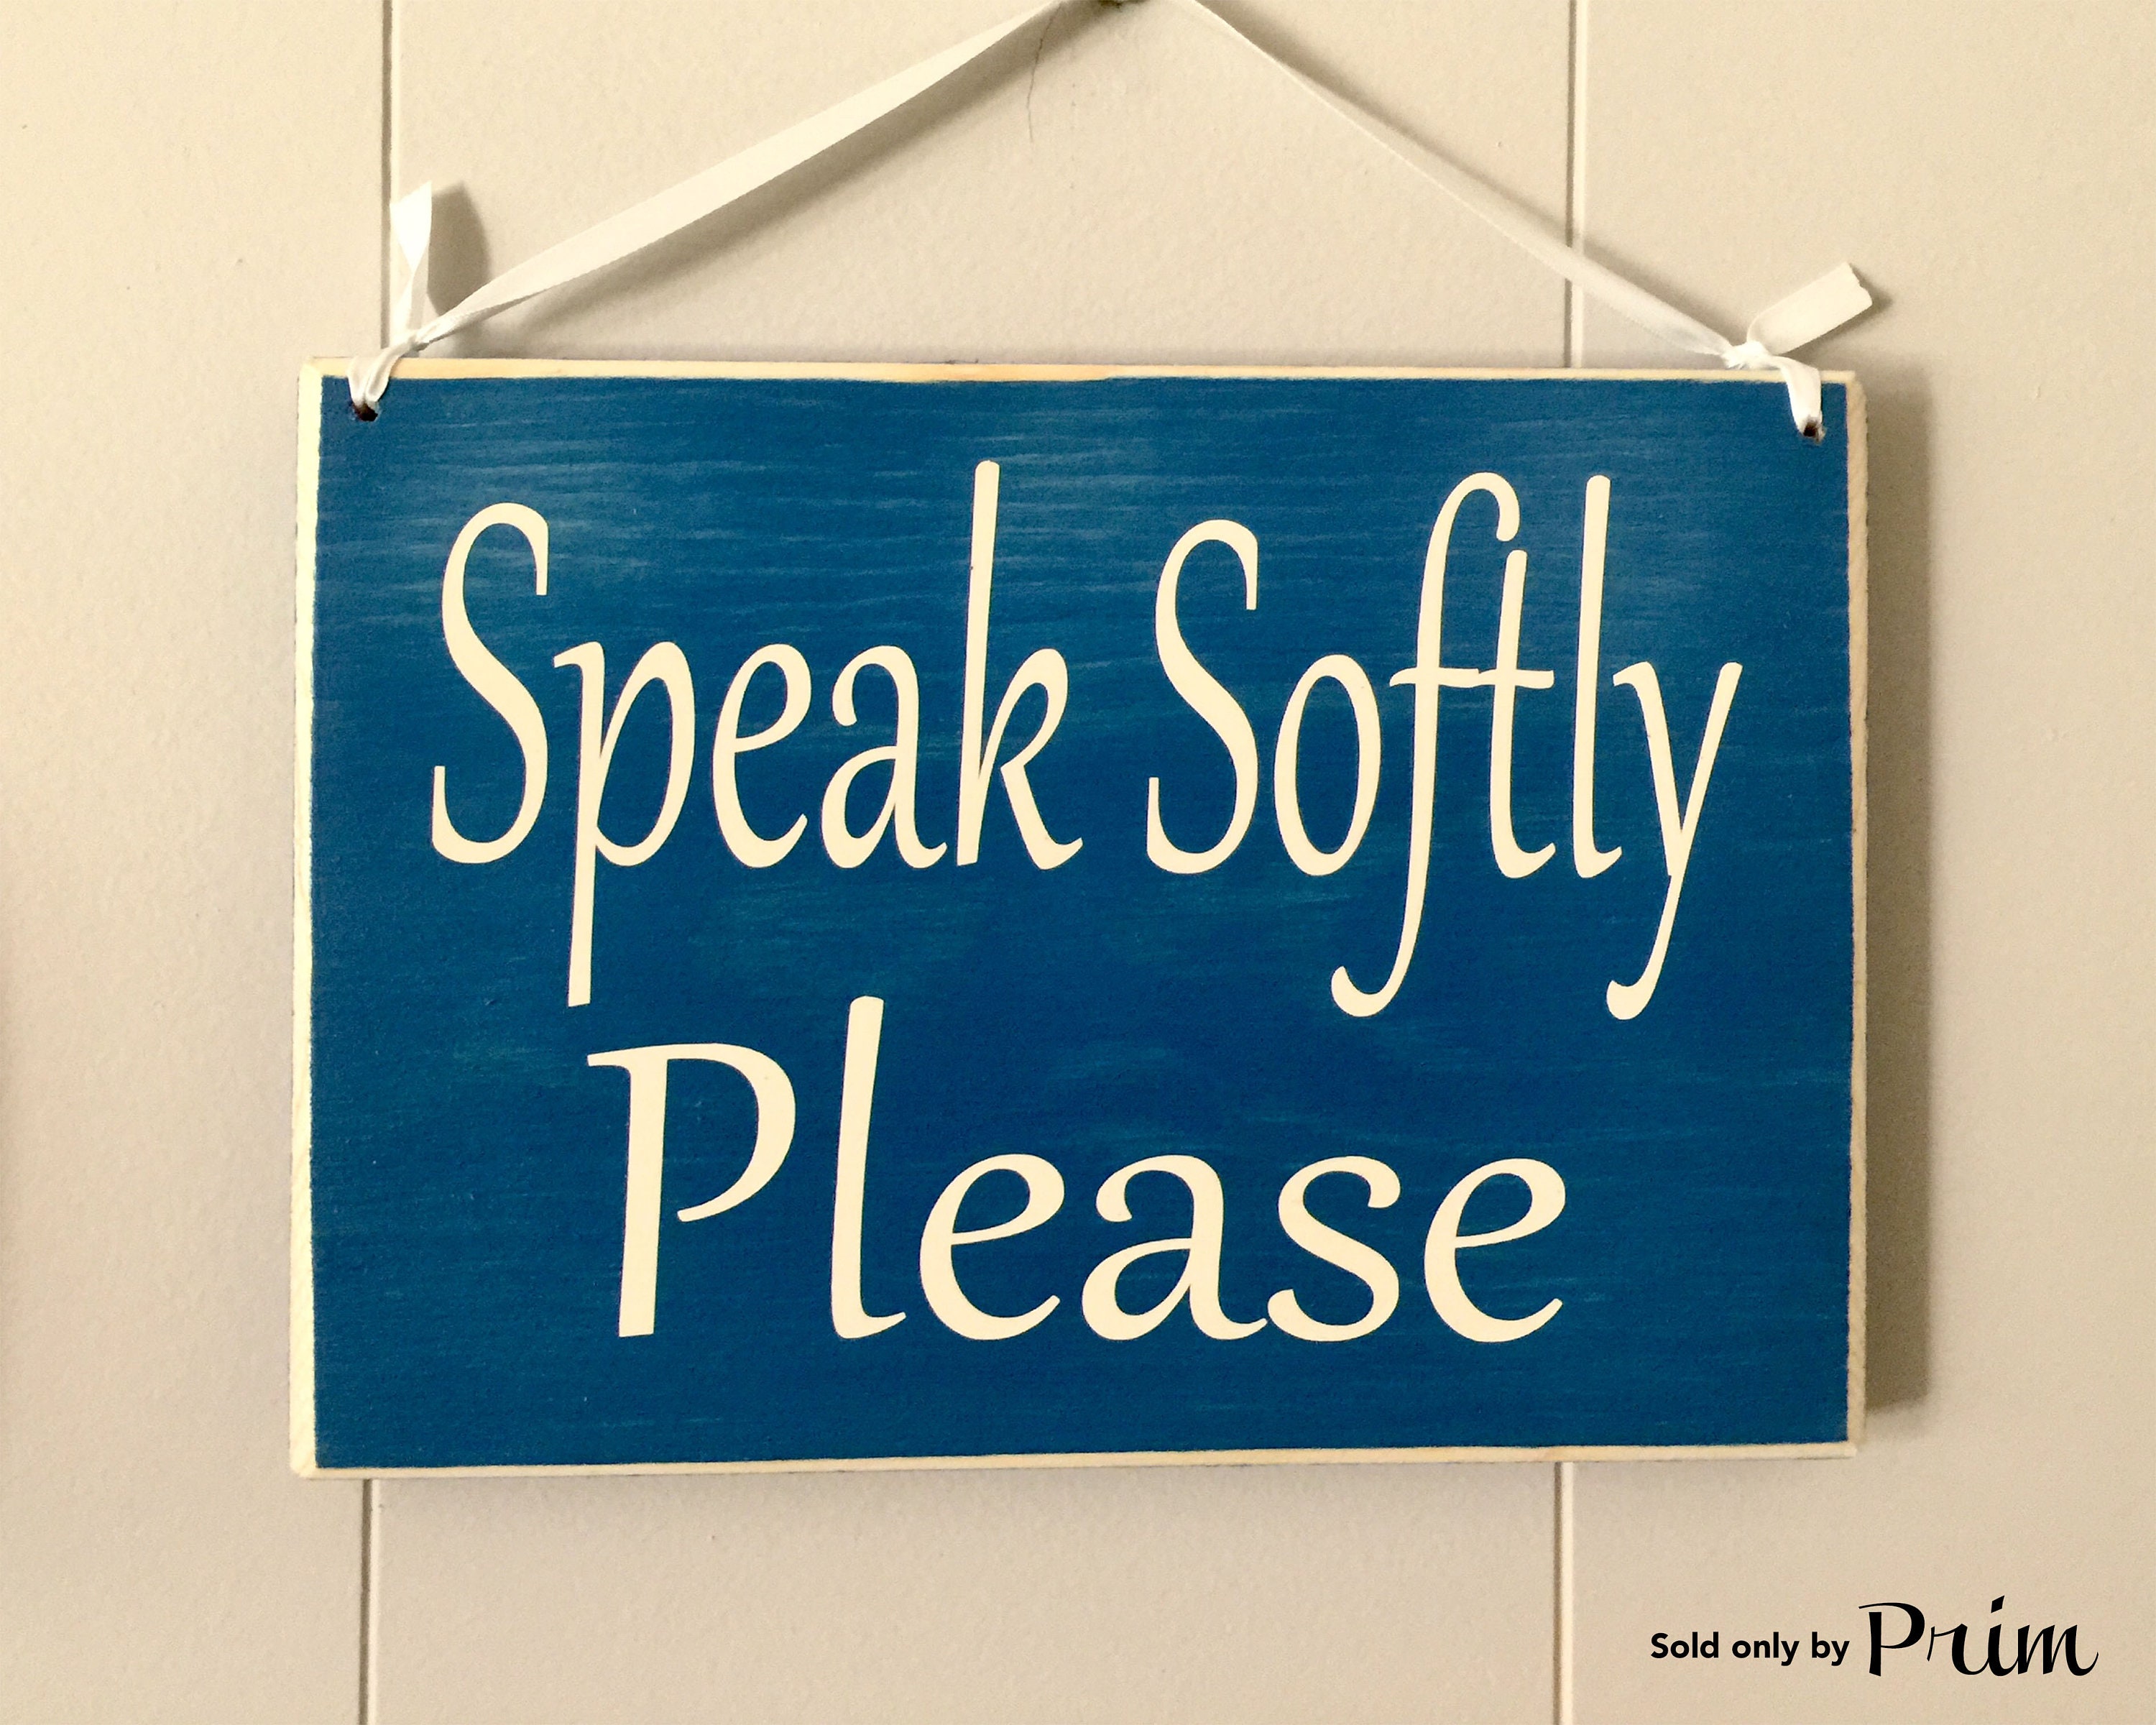 Quiet please. Speak quietly. Speaking quietly